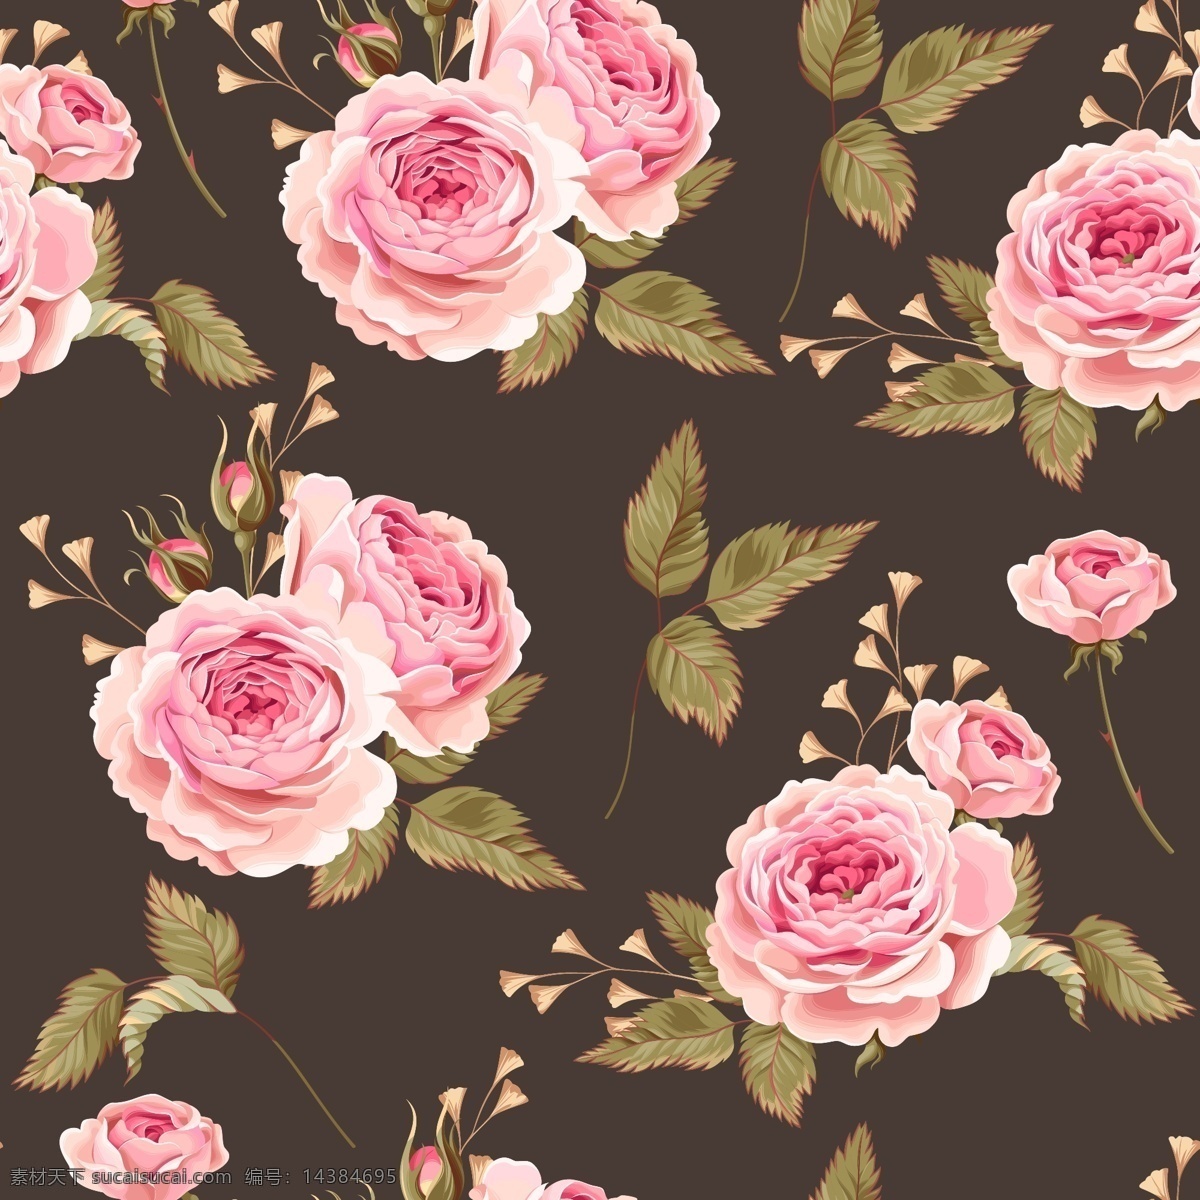 时尚 粉色 唯美 玫瑰花 背景 底纹 花朵 花卉